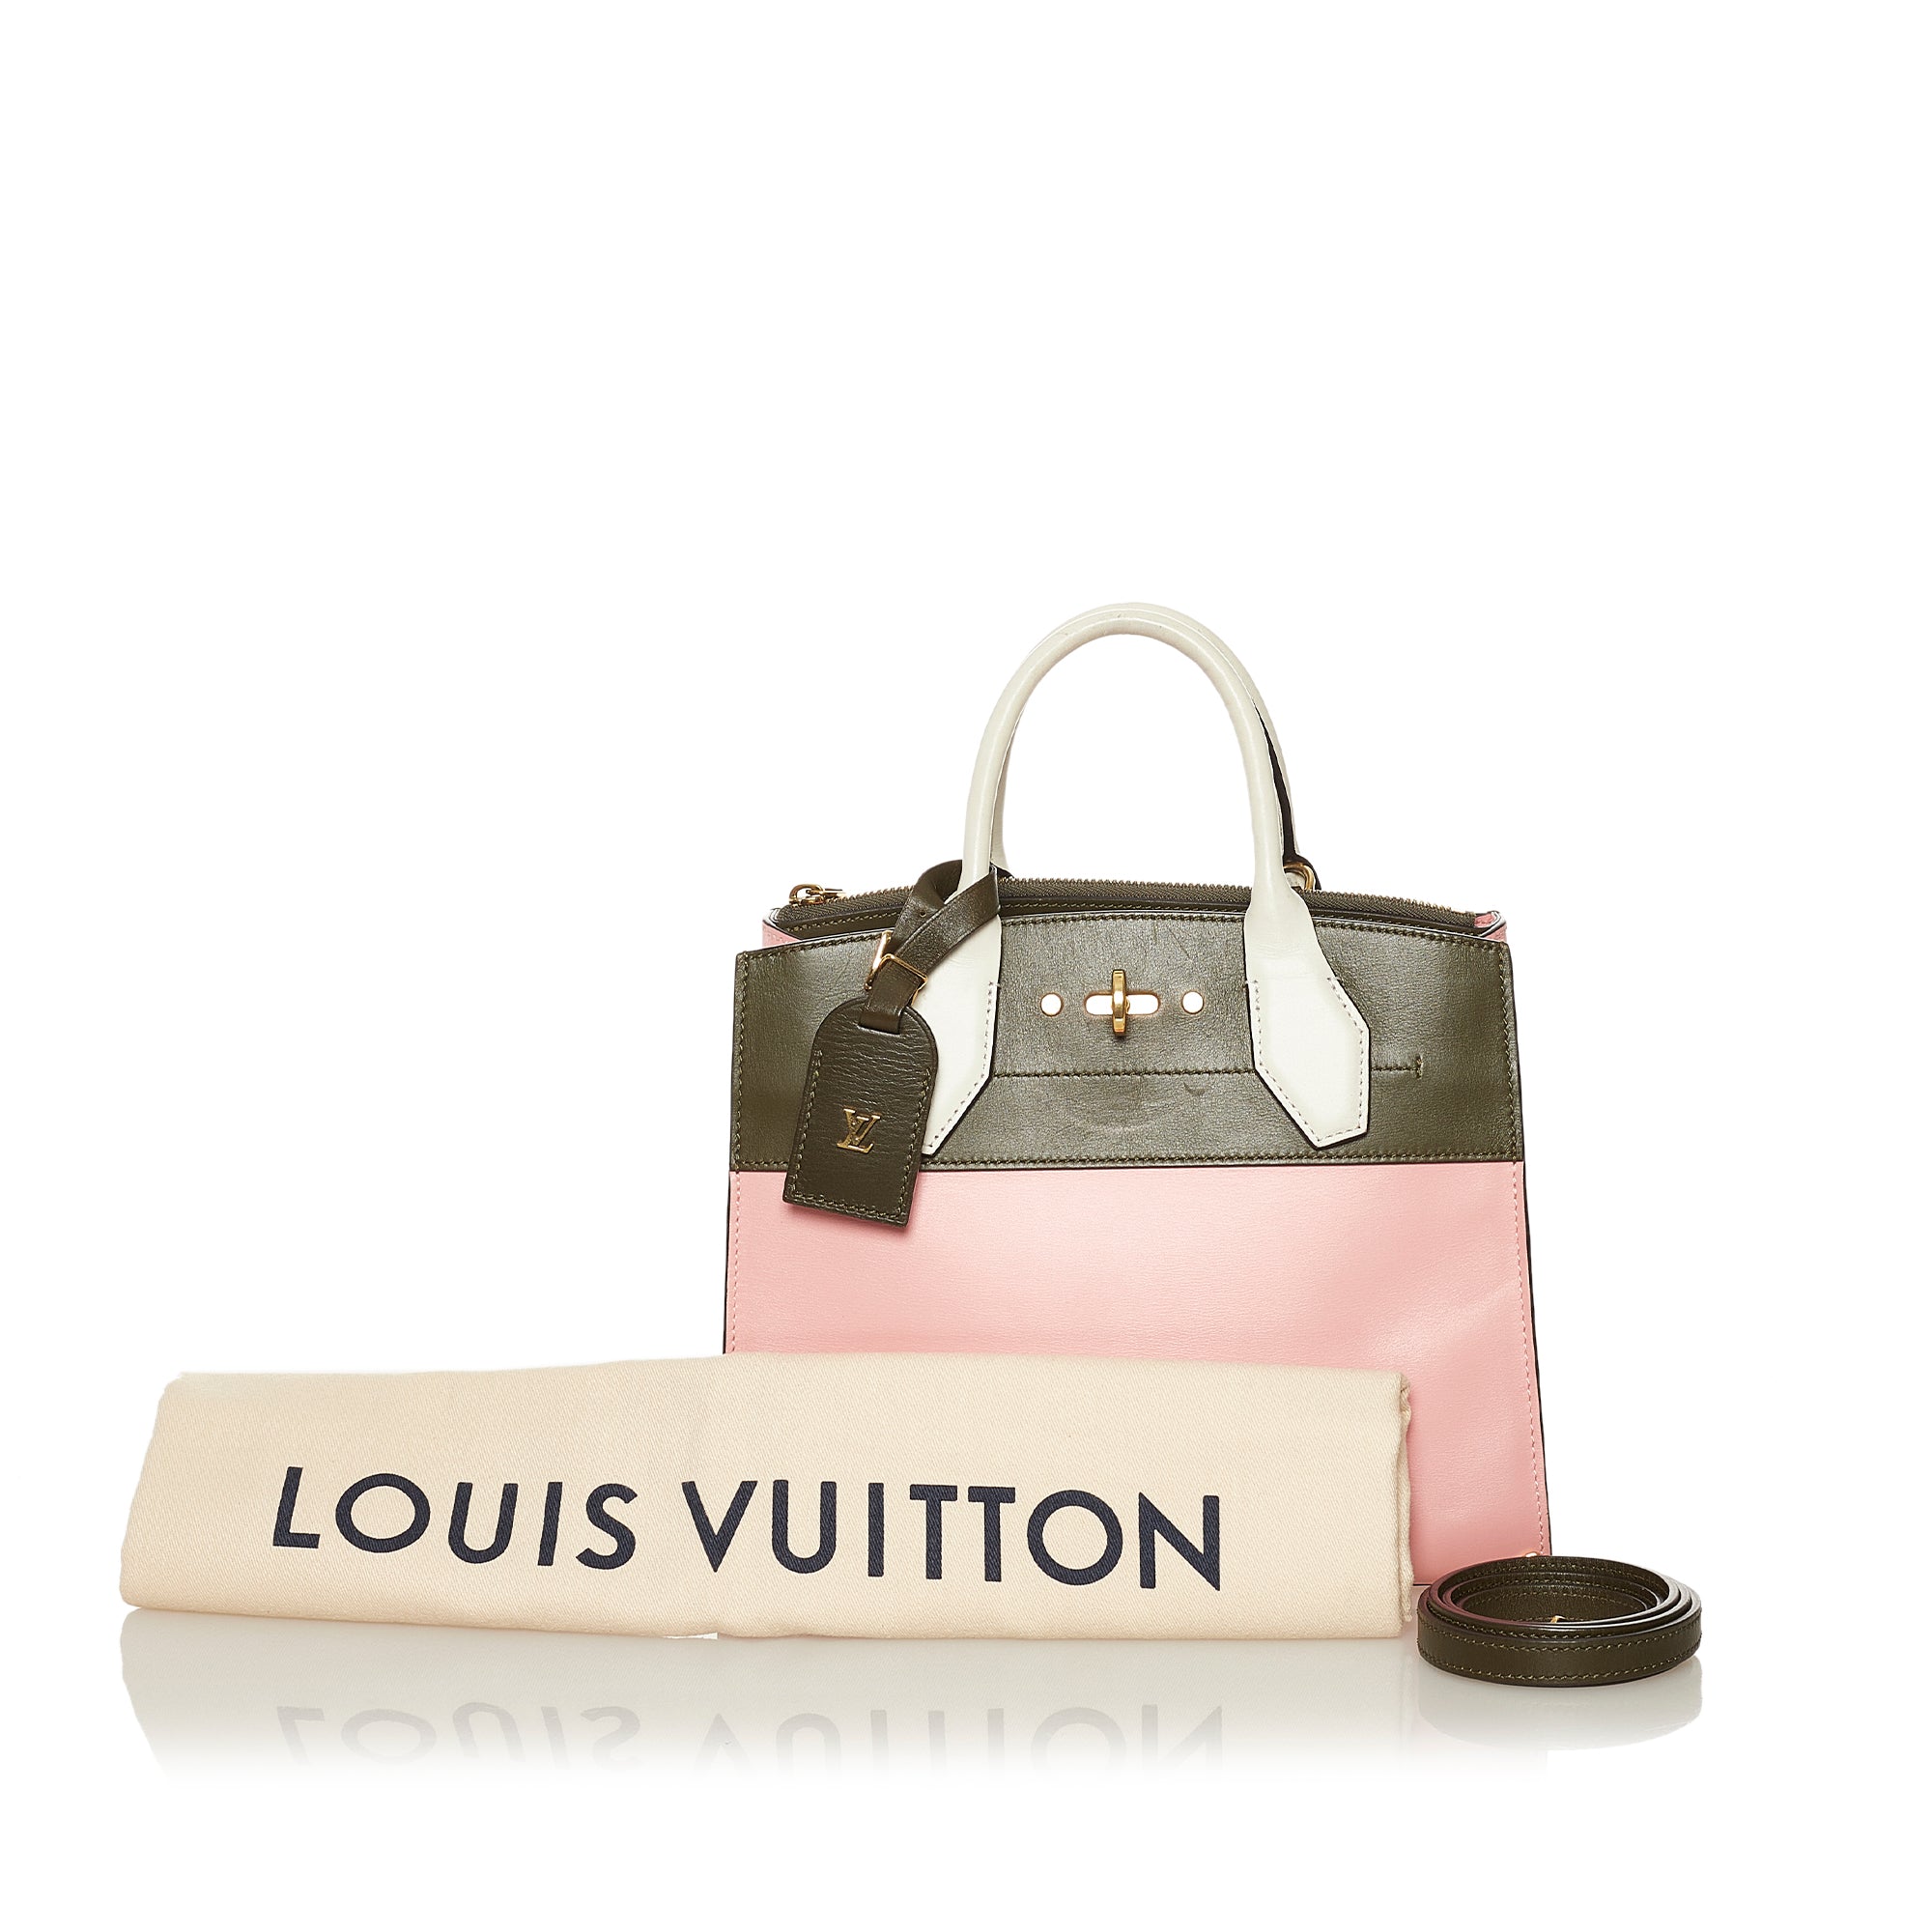 Louis Vuitton 1998 Pre-owned Damier Ébene Tote Bag